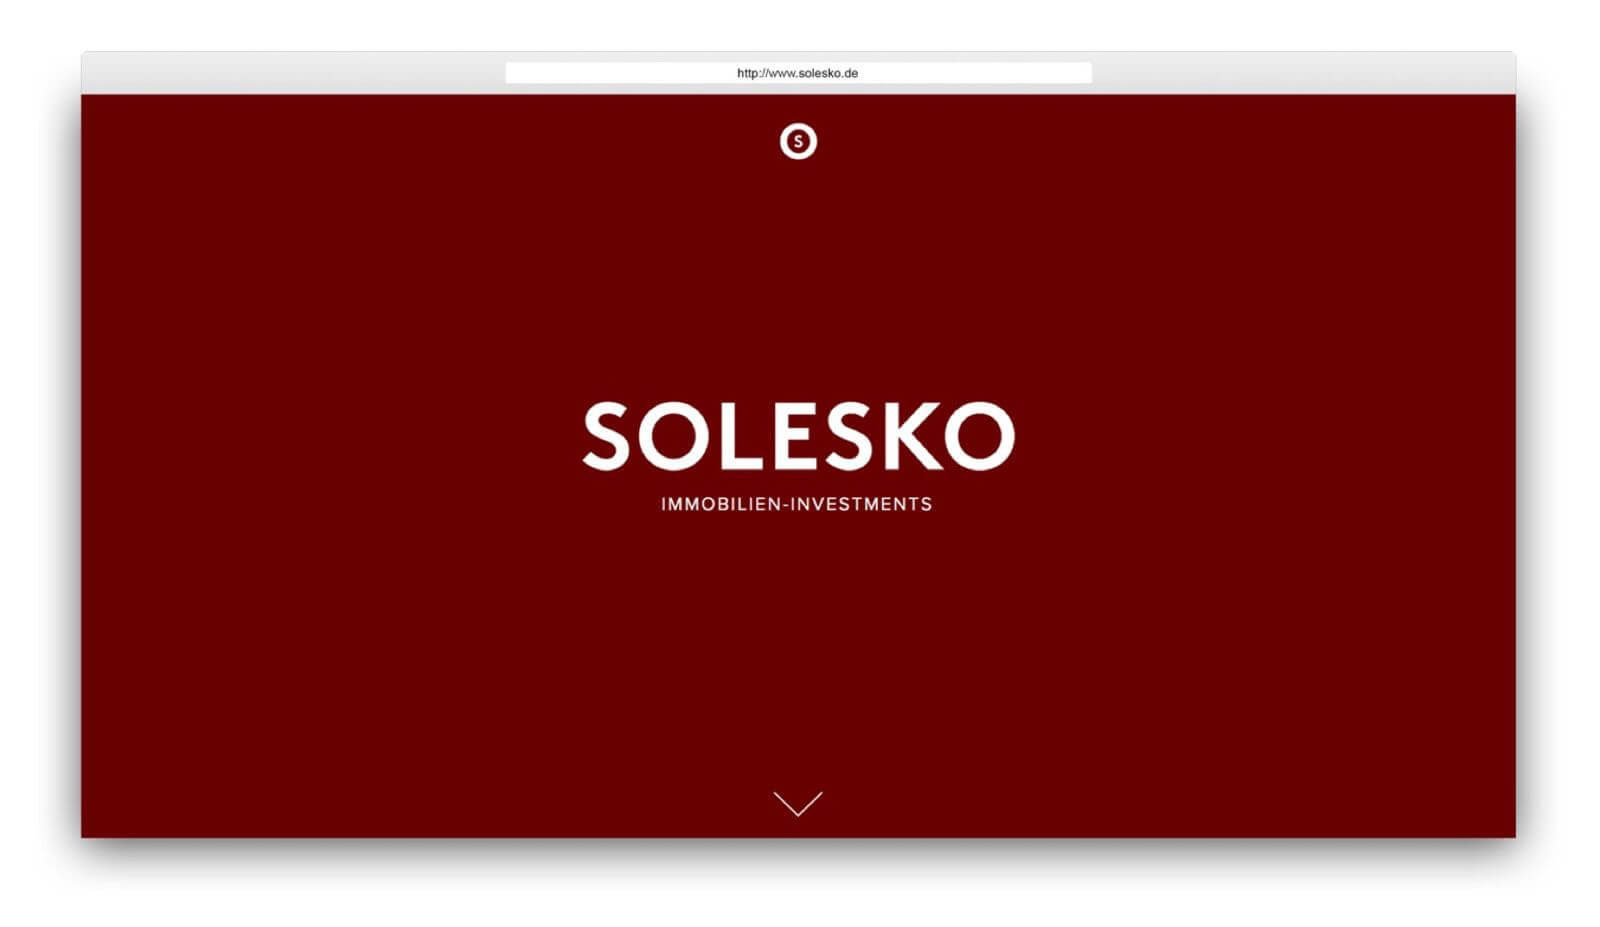 Teaser image of Solesko project